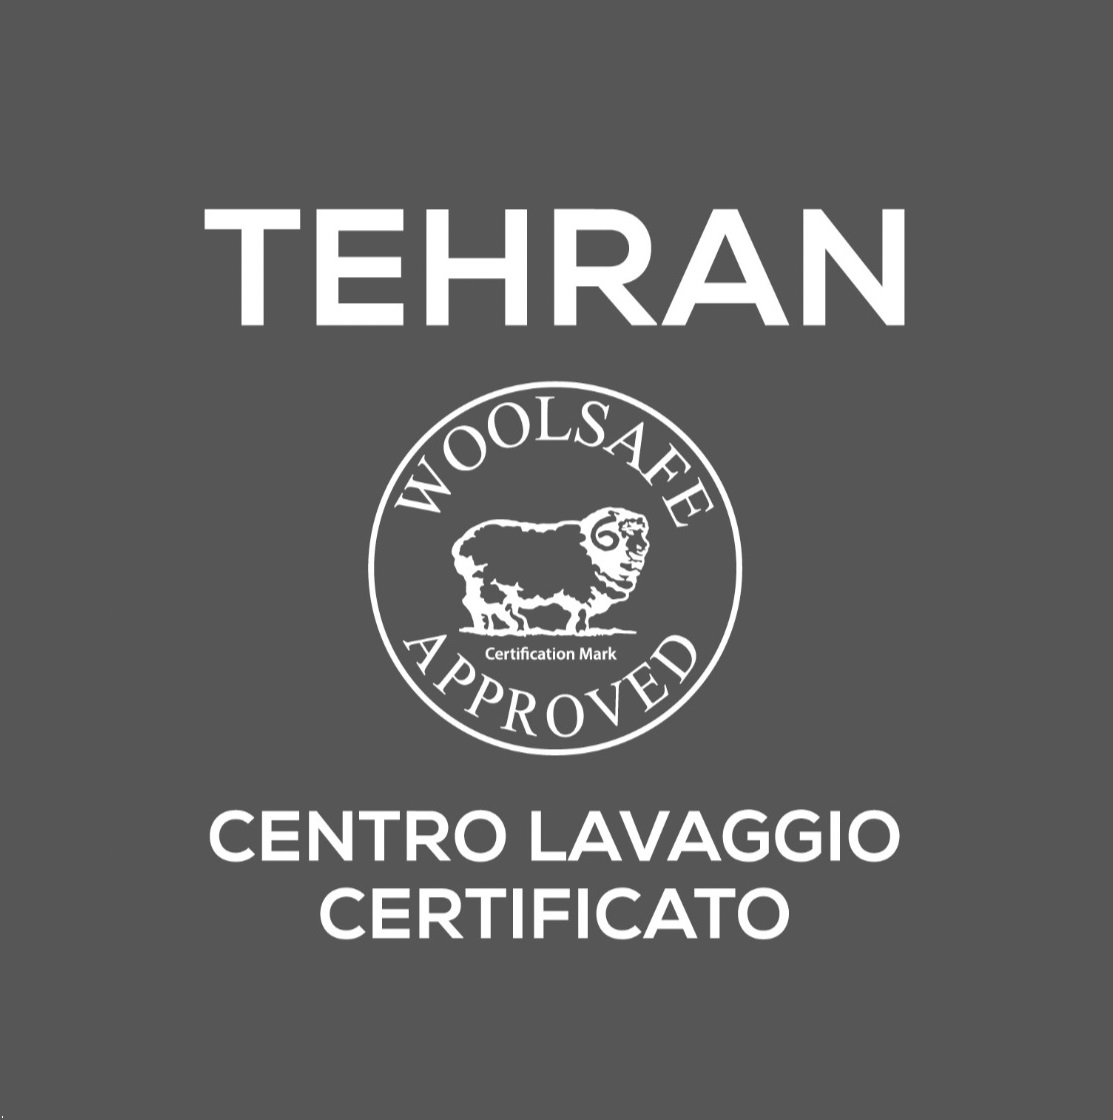 Tehran Logo grigio con woolsafe